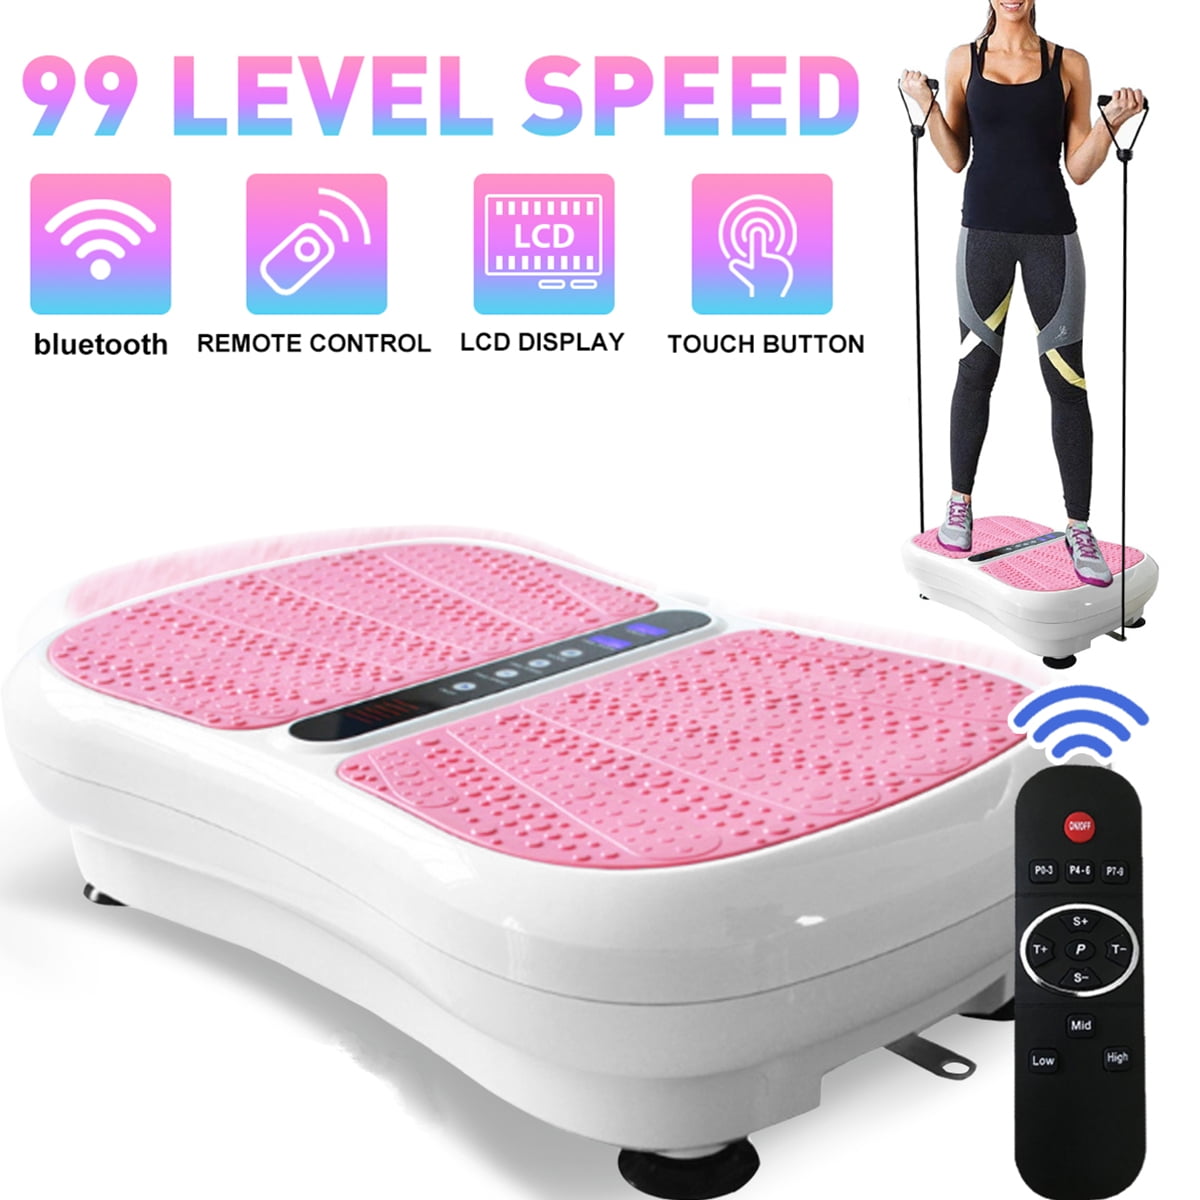 Vibration Platform Whole Body Massager Machine Exercise Fitness Free Smart Band 